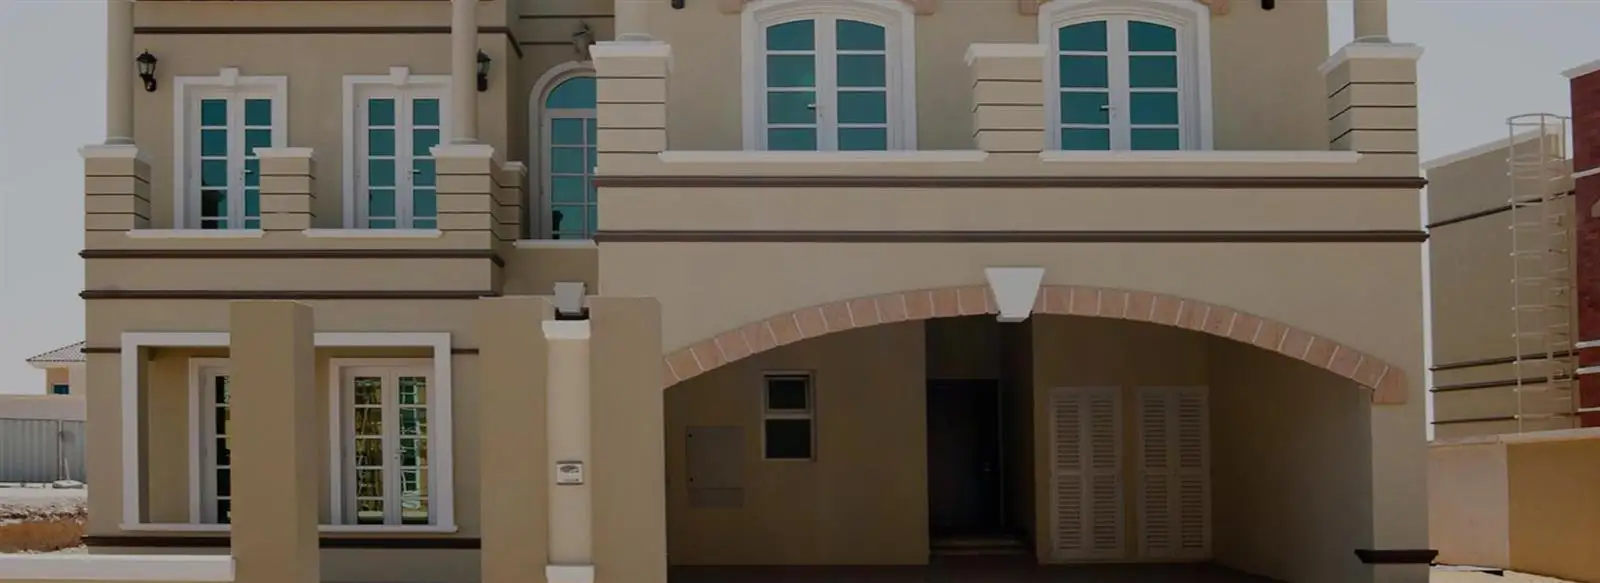 Gallery Villas en la ciudad deportiva de Dubái